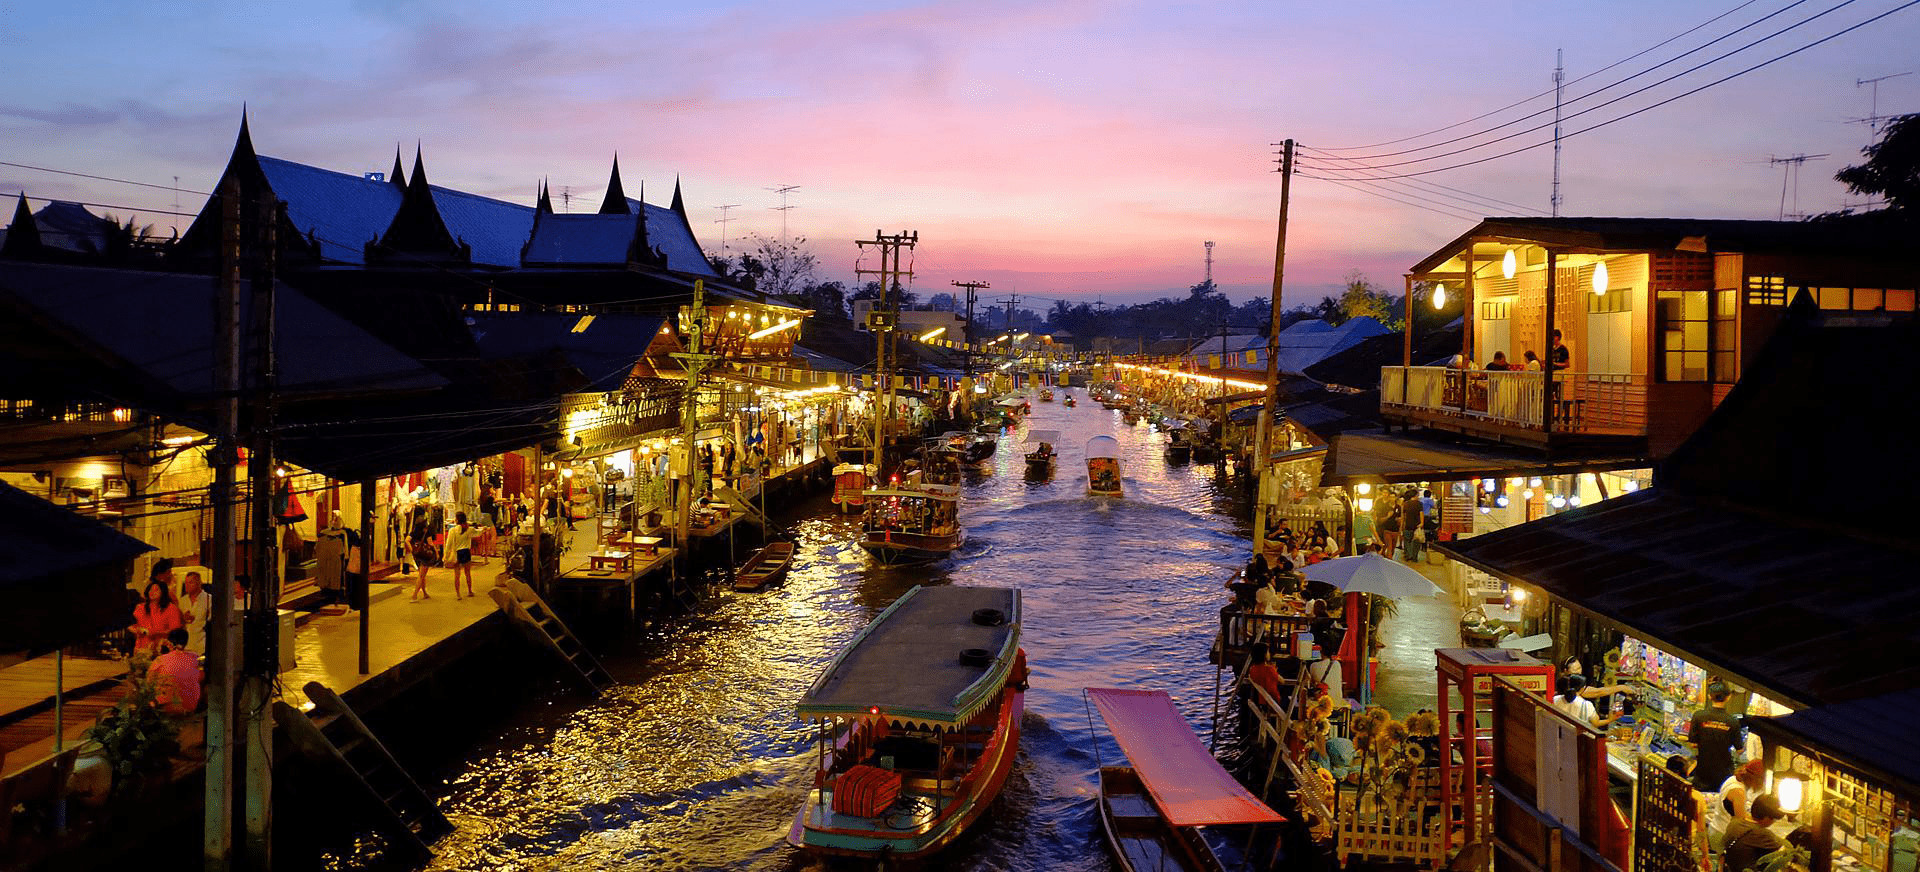 曼谷水上市場一日遊：丹嫩莎朵水上市場＆美功鐵道市場＆其他景點